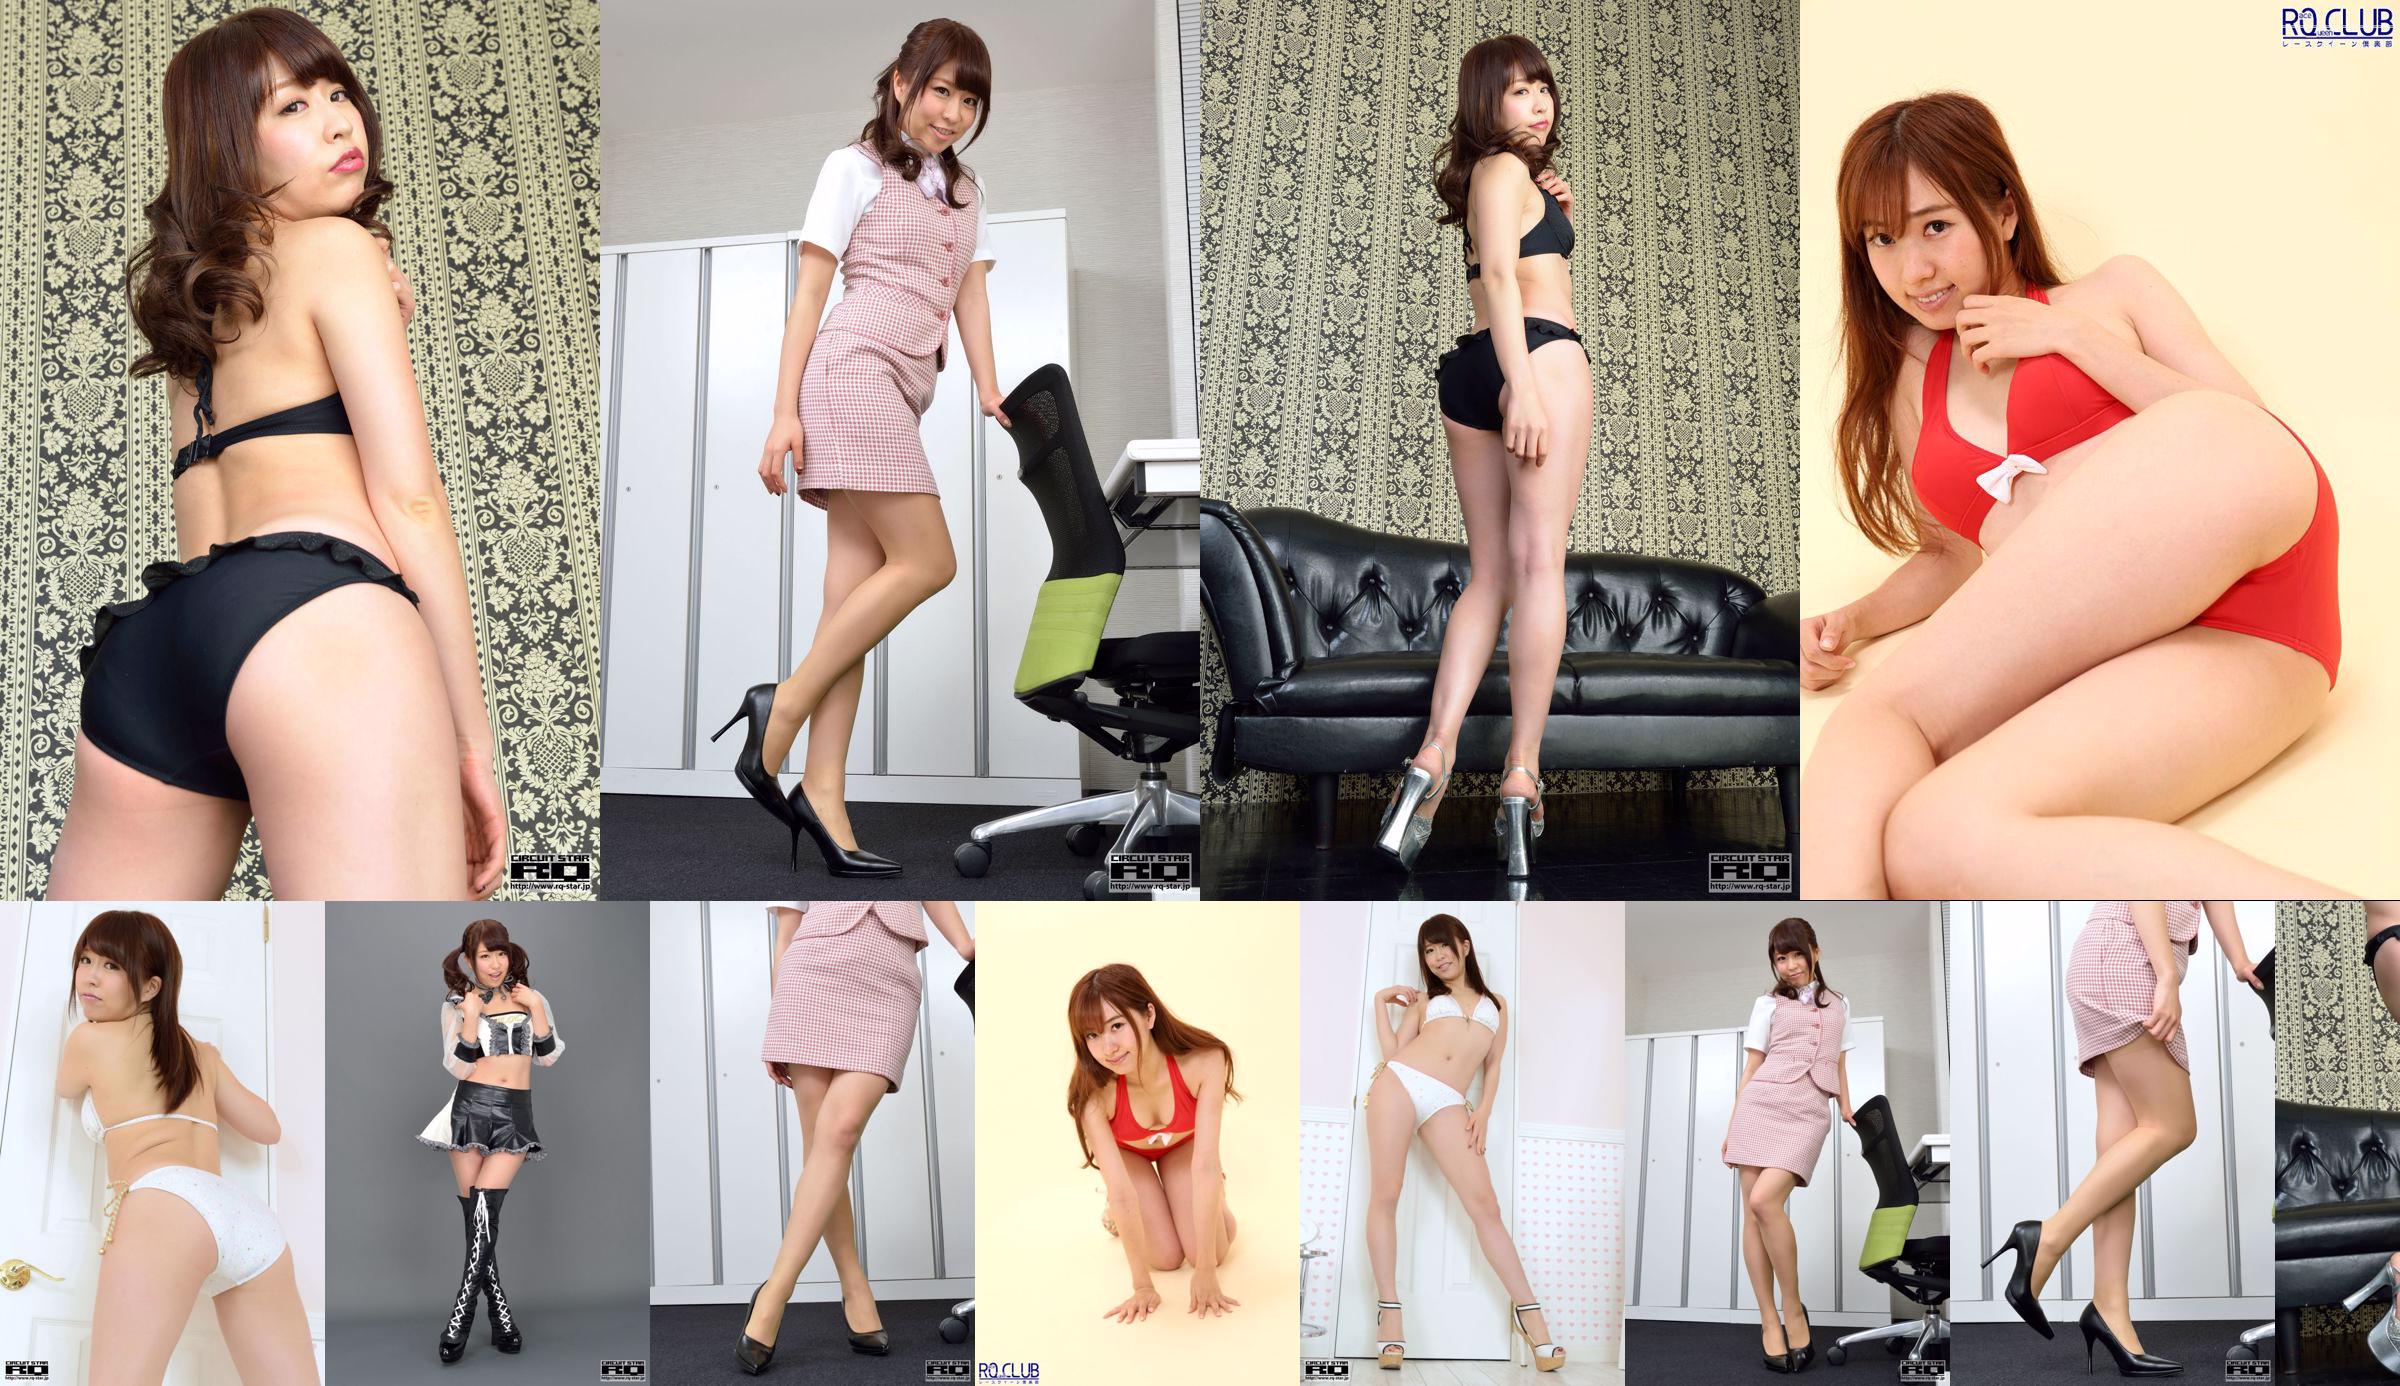 [RQ-STAR] No.00901 mamiya miyu Miyu Mamiya / Miyu Mamiya Pakaian Renang Baju Renang Hitam Sutra Tinggi No.cc1a39 Halaman 35